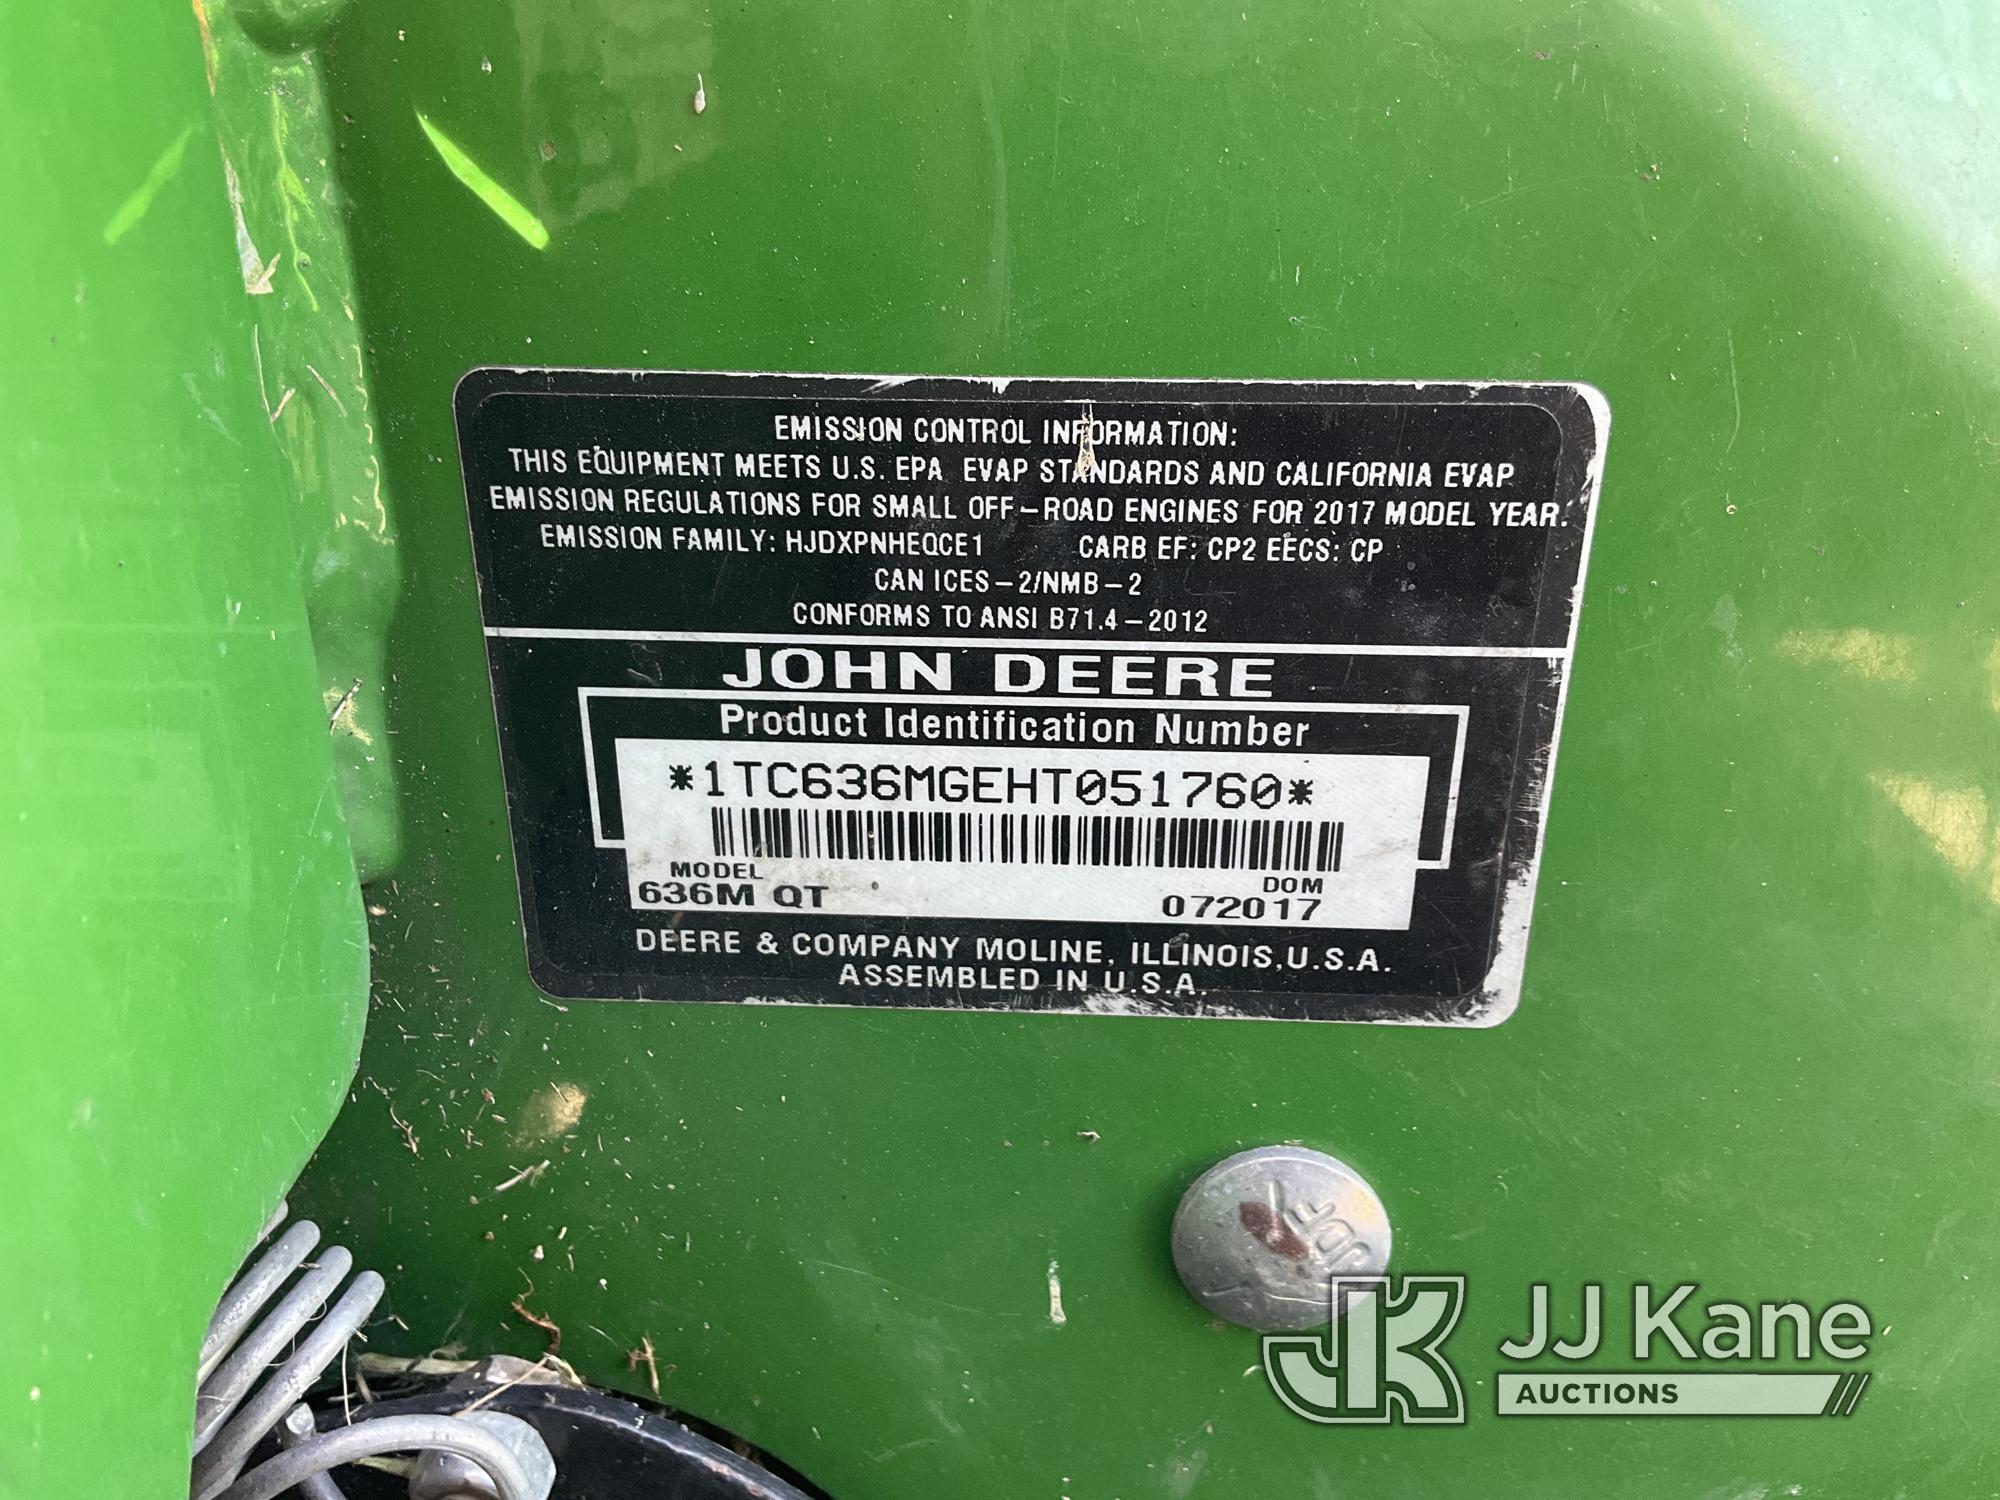 (Jurupa Valley, CA) John Deere 636M Lawn Mower Not Running, Missing Keys